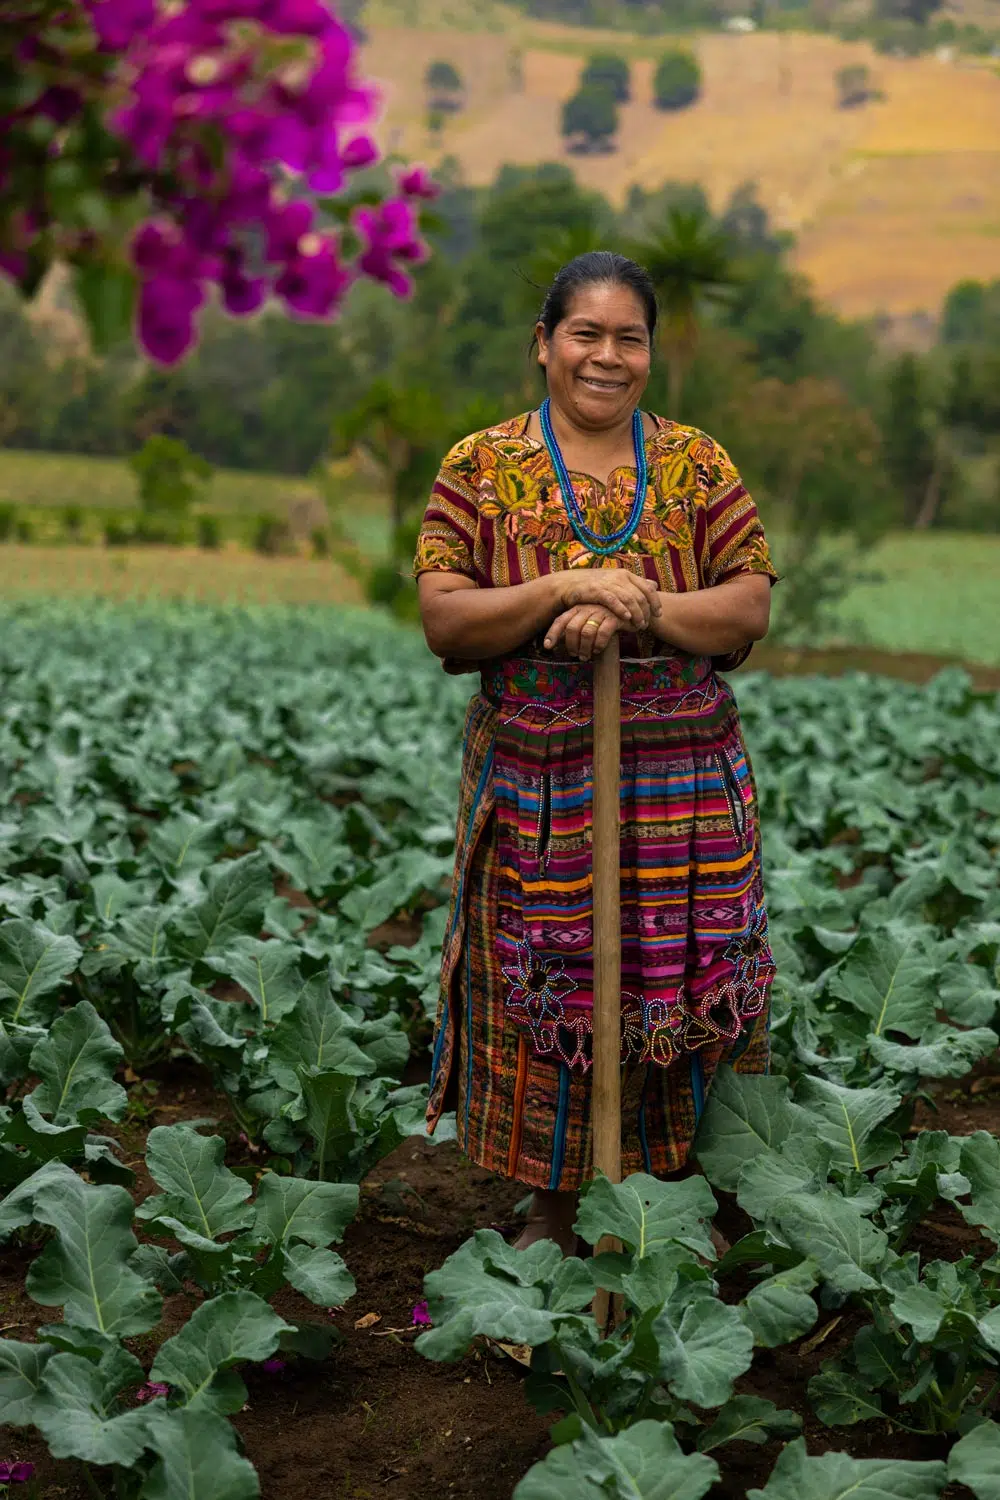 Agricultural education helps a Guatemalan farmer grow broccoli